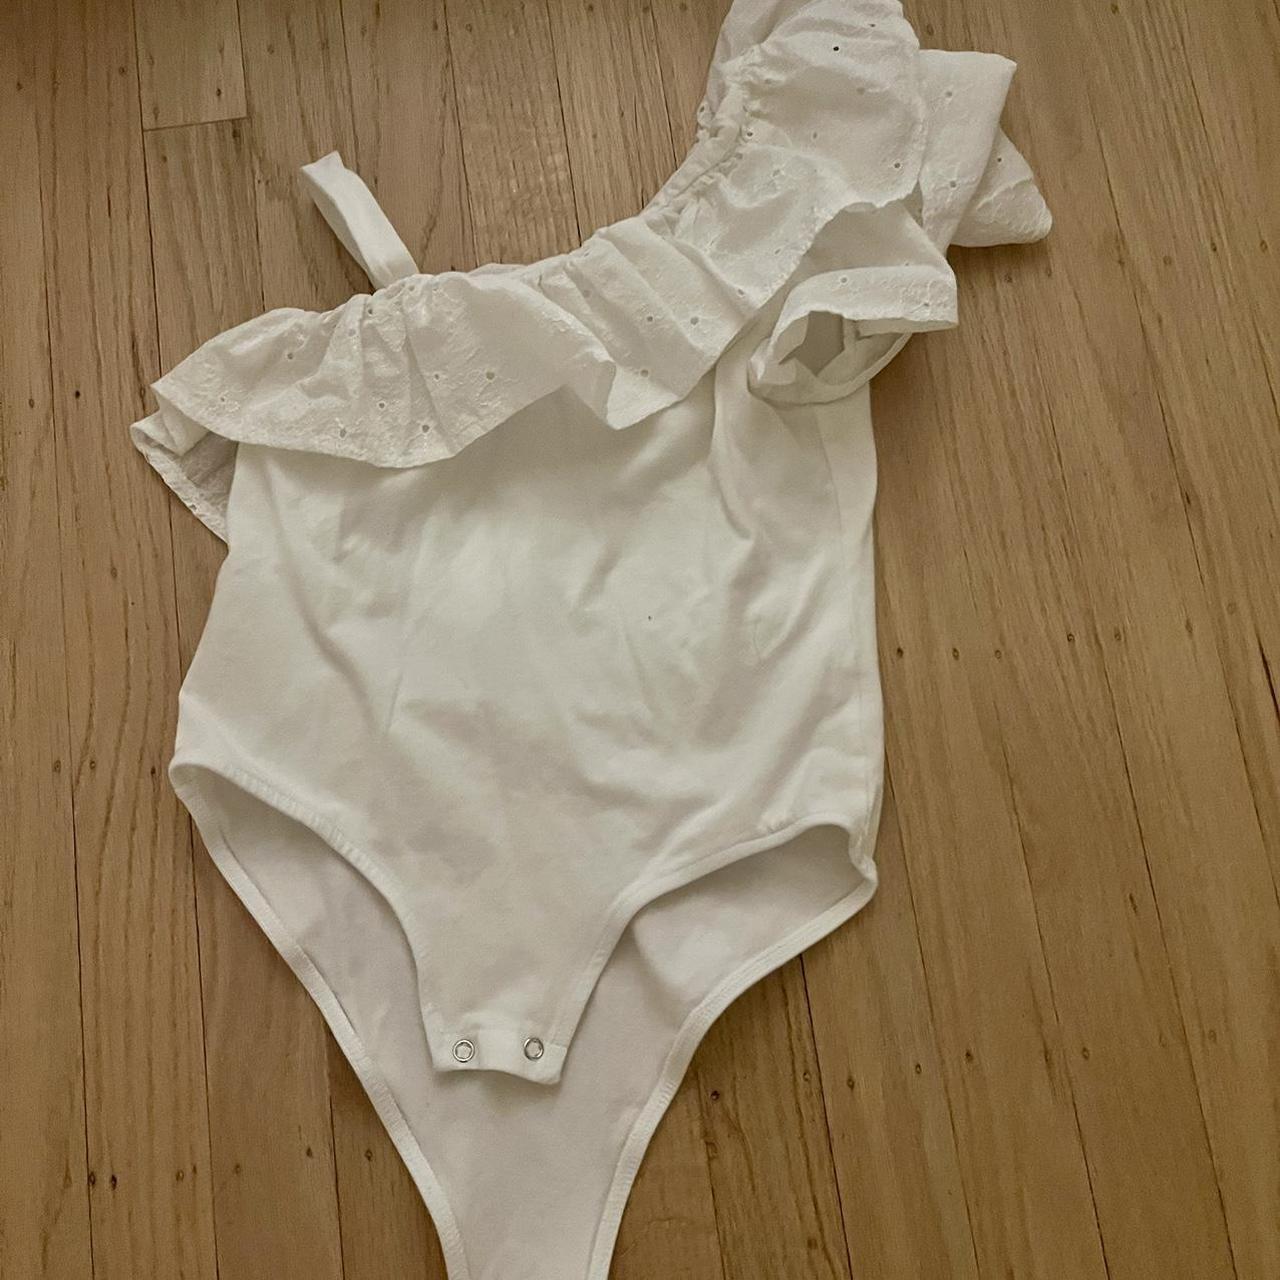 White ruffle body suit from Zara - Depop